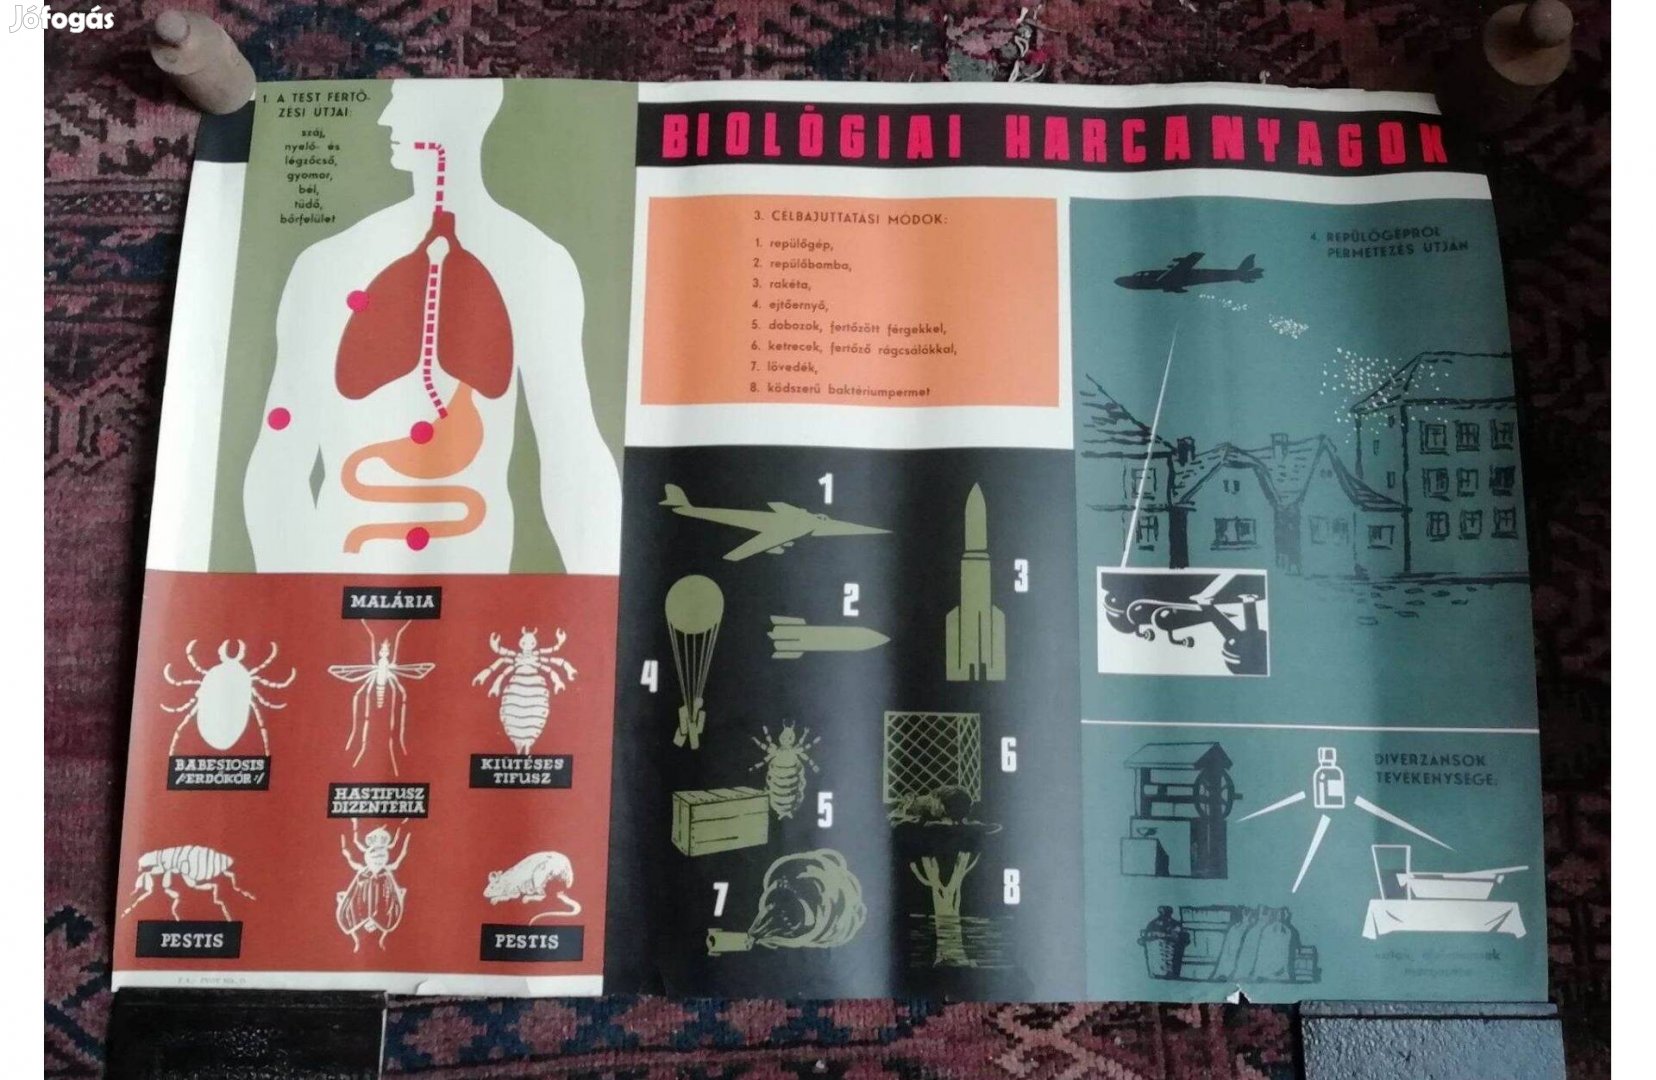 Biológiai Harcanyagok, Propaganda Plakát. BP., 1950-es évekből